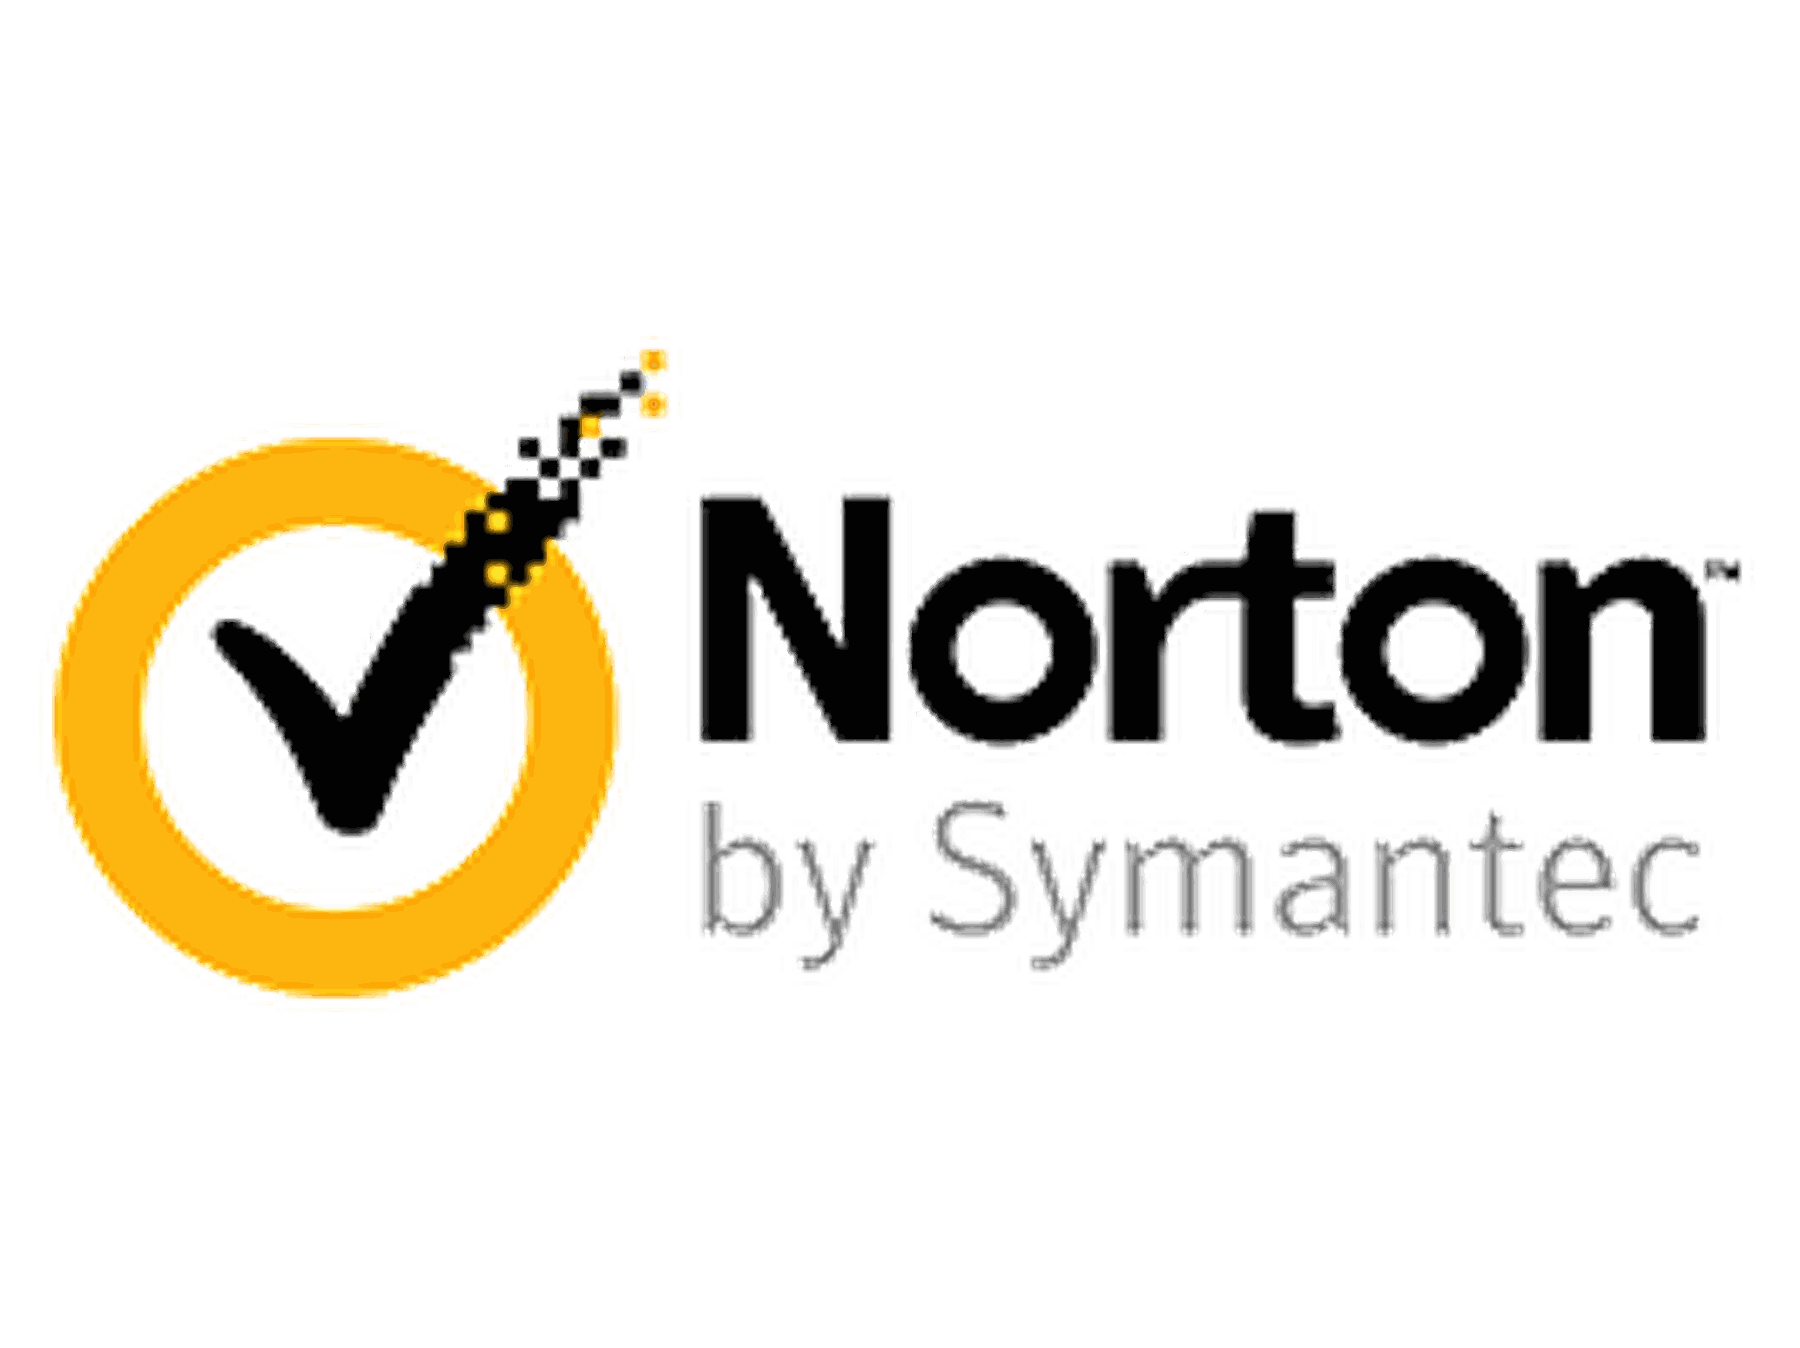 Código descuento Norton